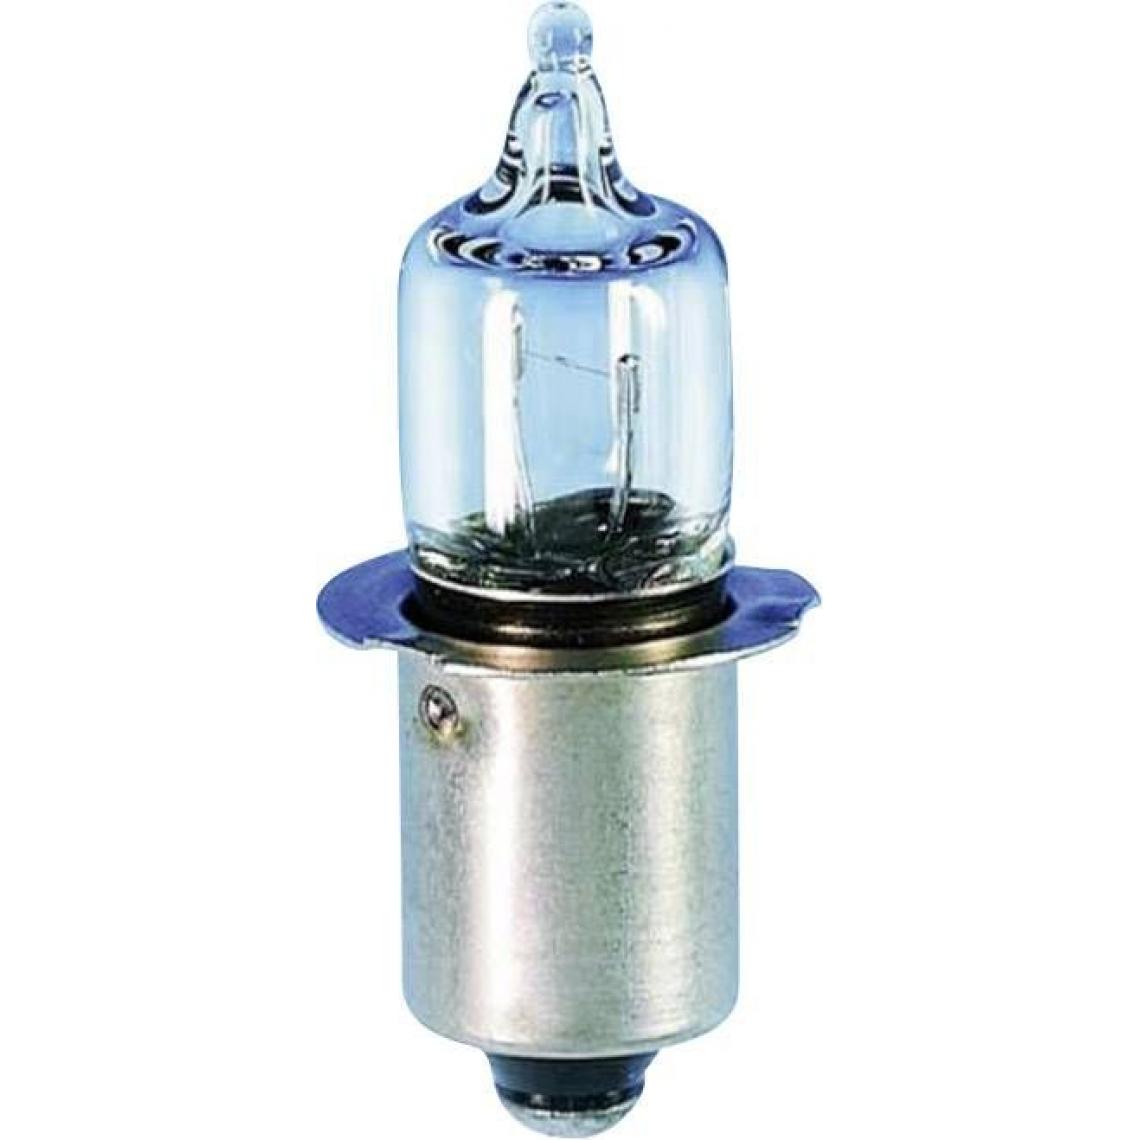 Inconnu - Ampoule halogène miniature Barthelme 01696570 6.5 V 4.20 W P13.5s clair 1 pc(s) - Ampoules LED